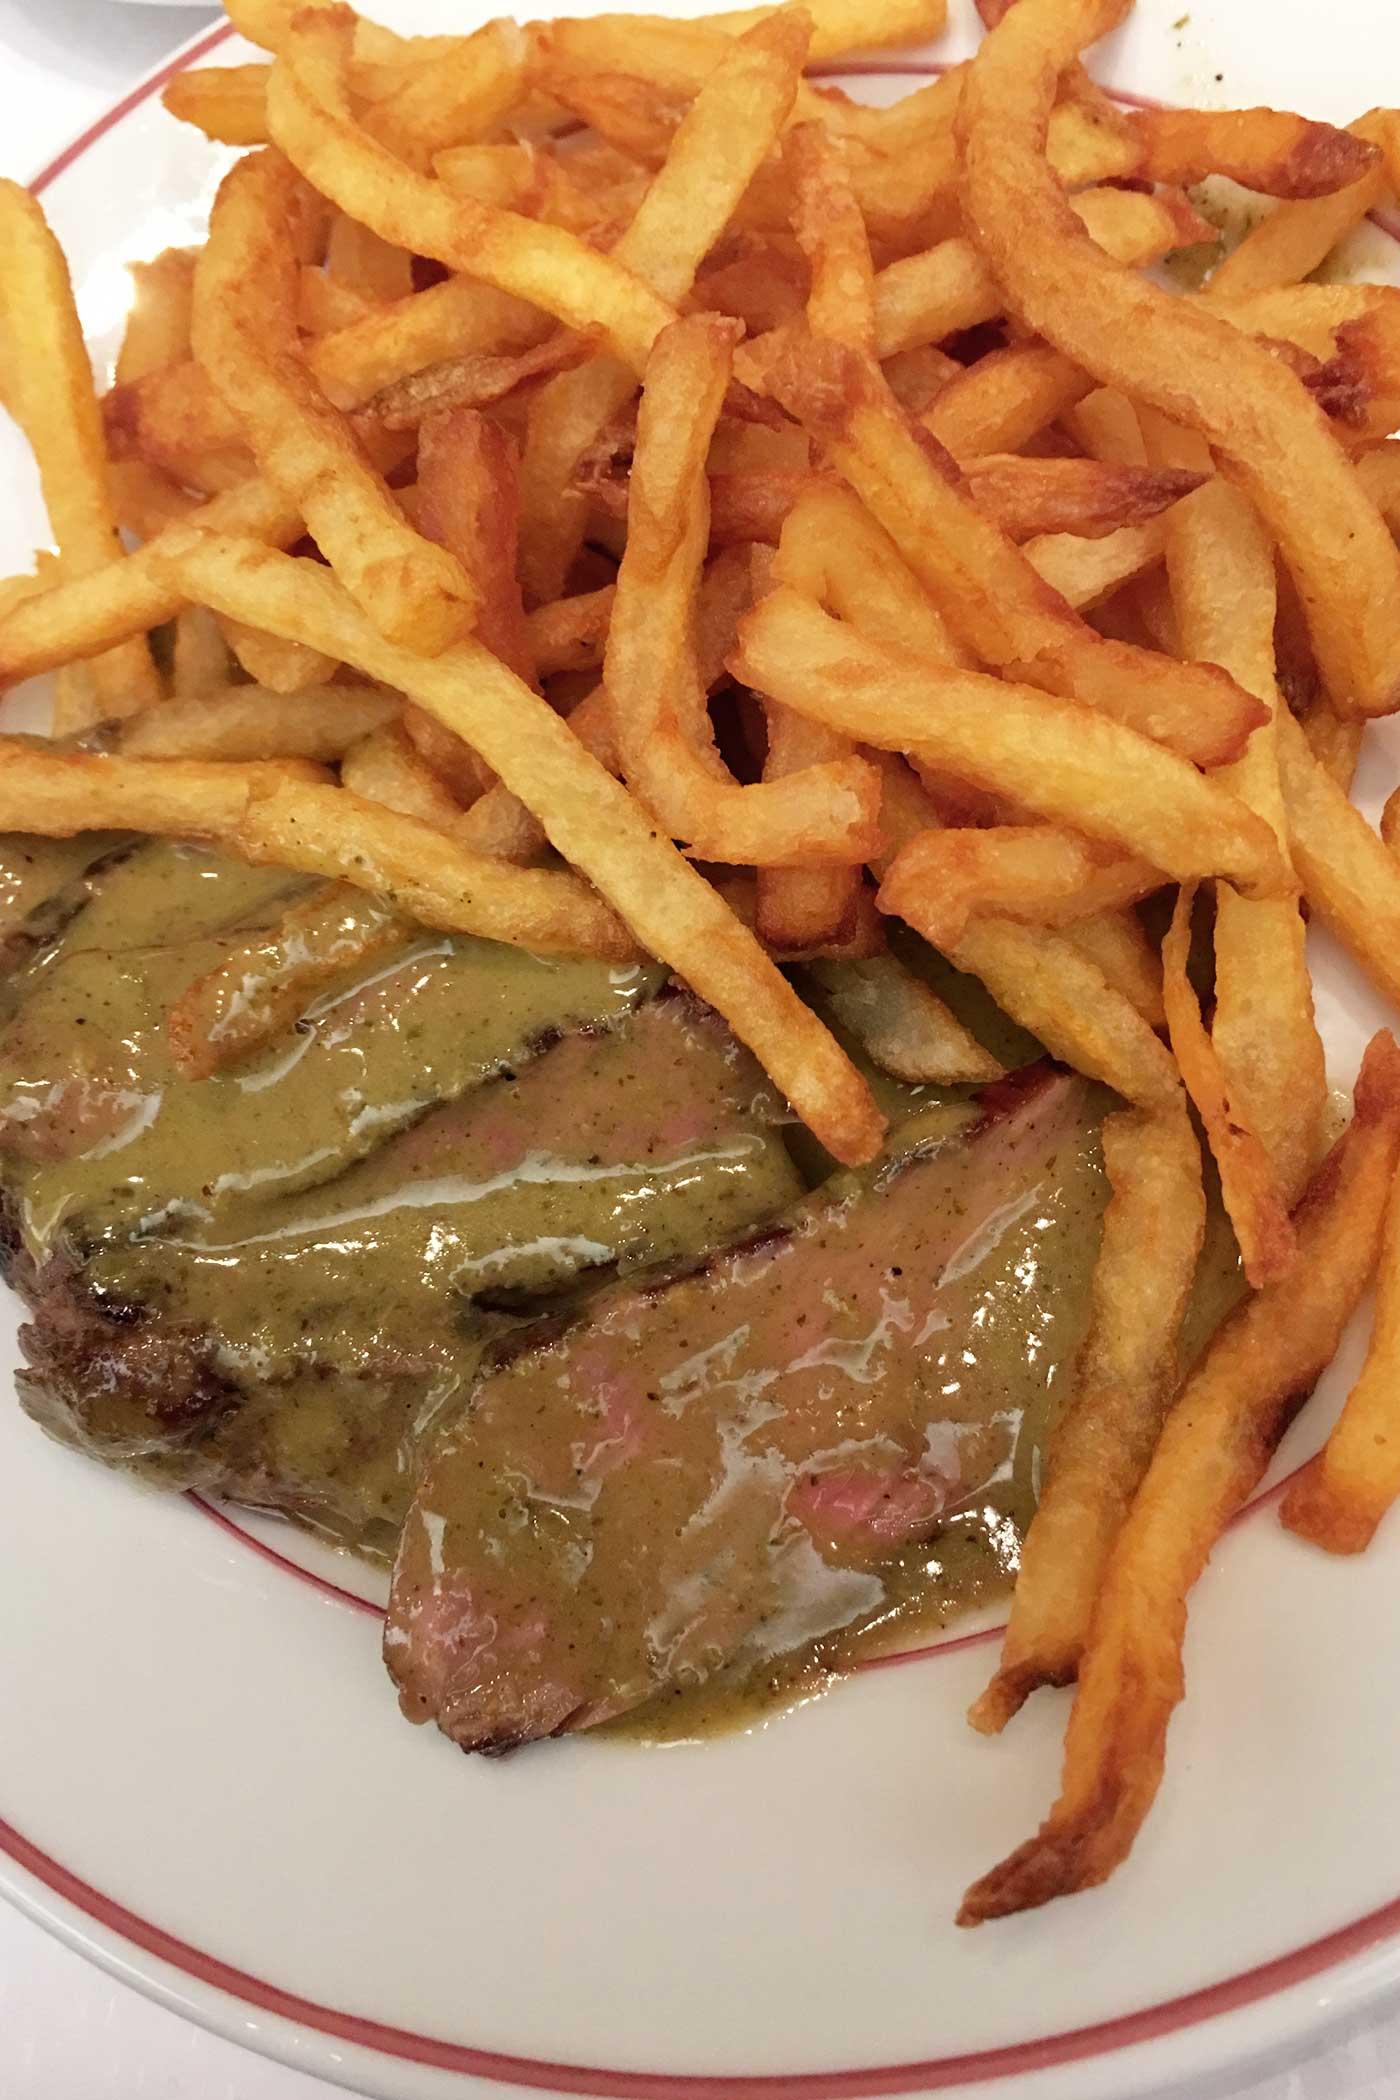 best steak frites with mustard sauce at Relais de l’Entrecôte in paris the food quest